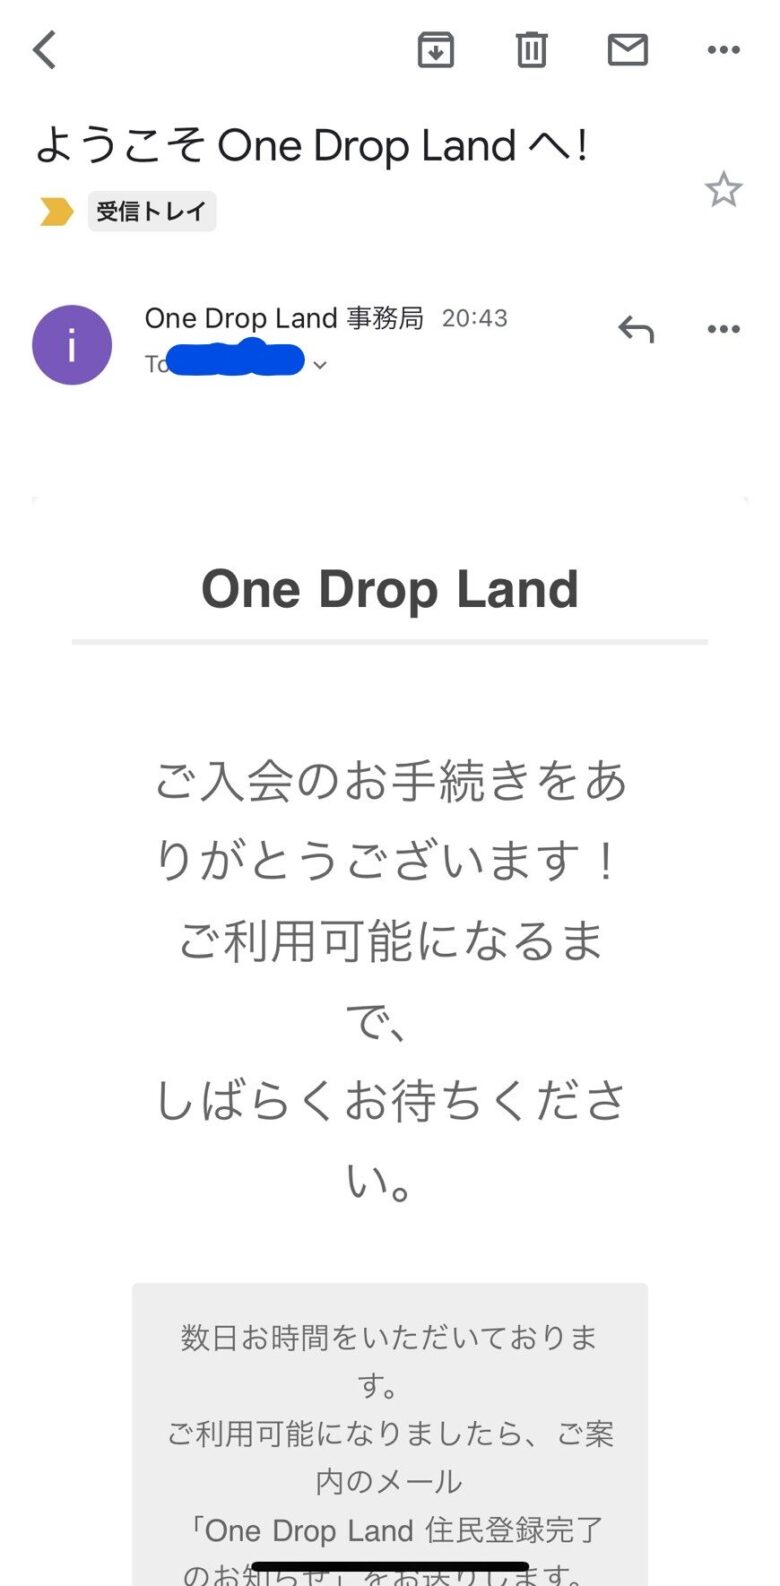 「ようこそ One Drop Land へ！」のメール